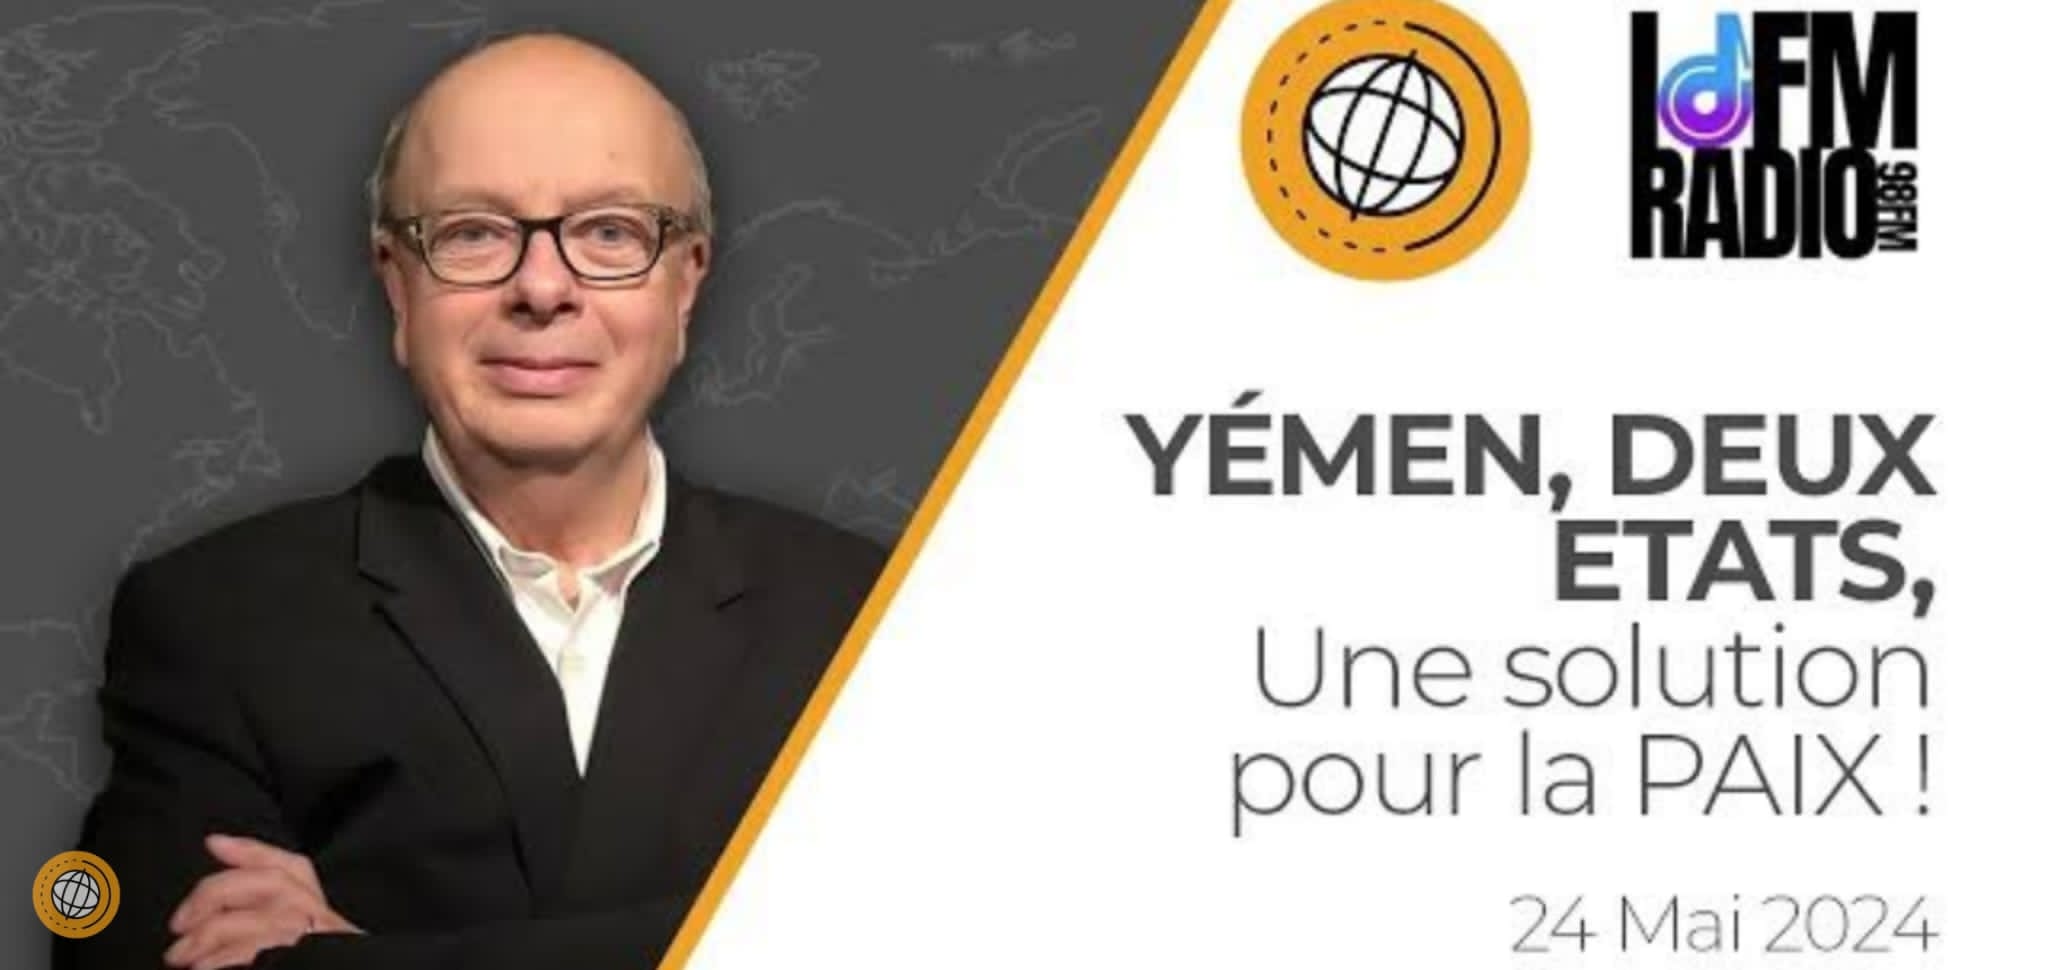 باحث فرنسي : حل الدولتين هو الحل القادر على إحلال السلام في اليمن